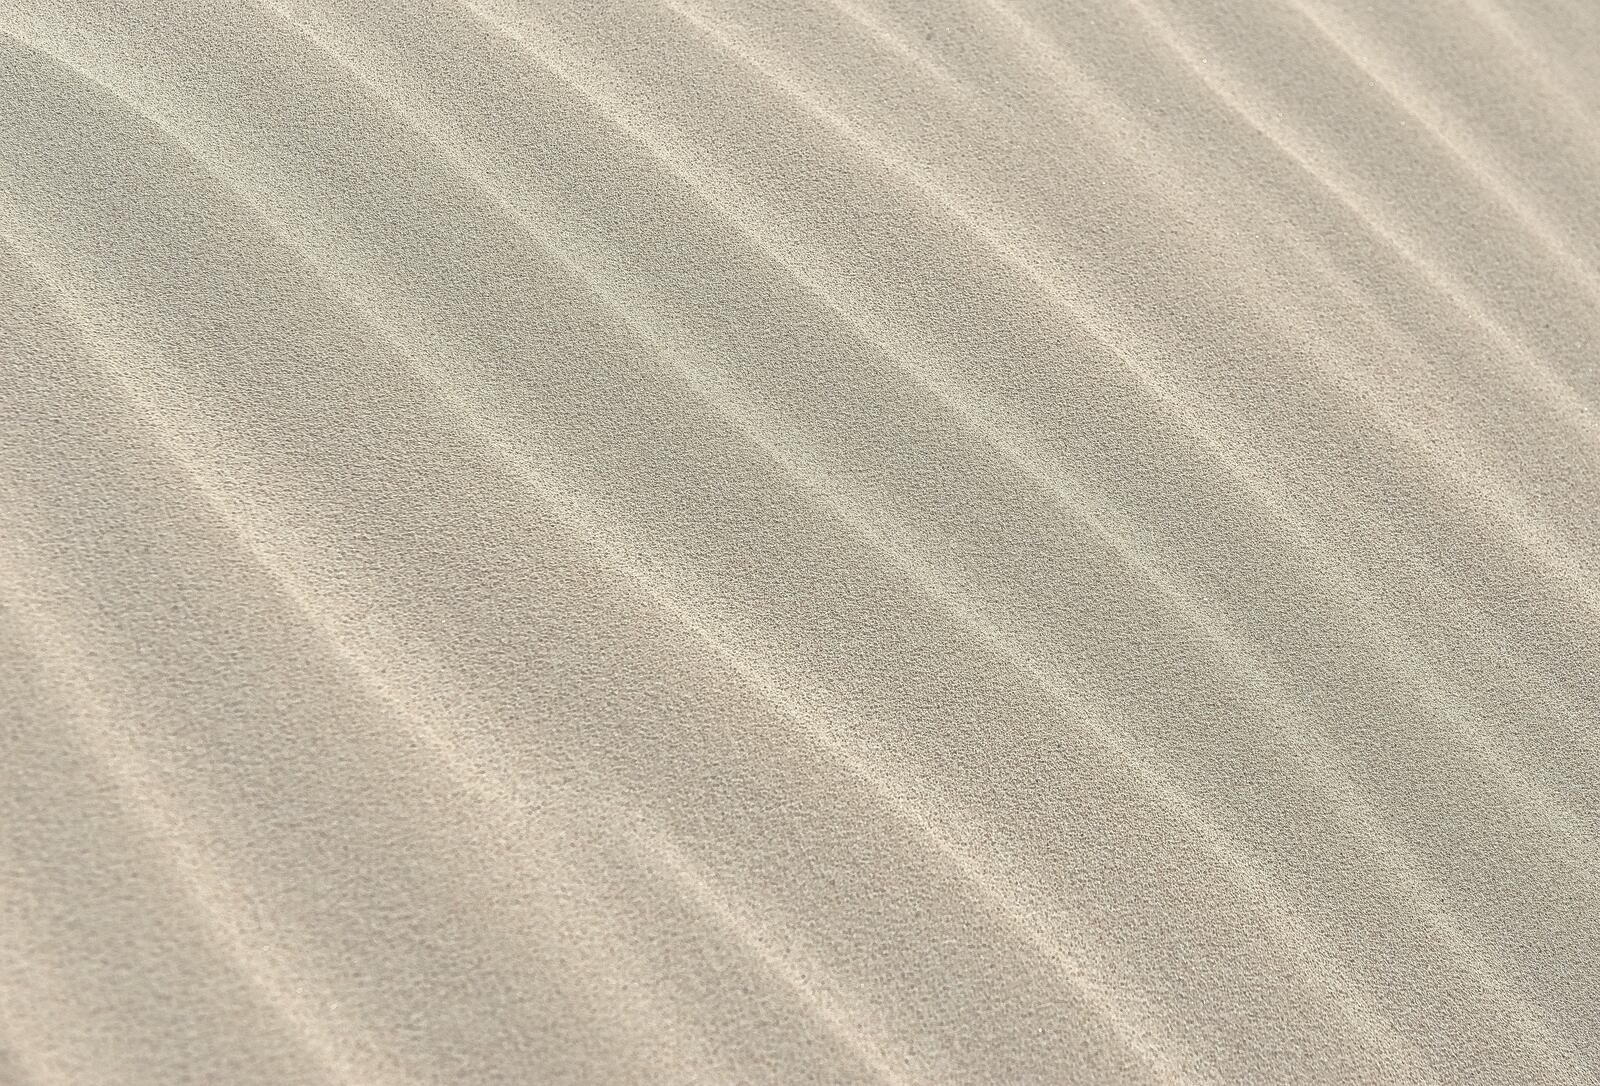 Фон из песока в пустыне